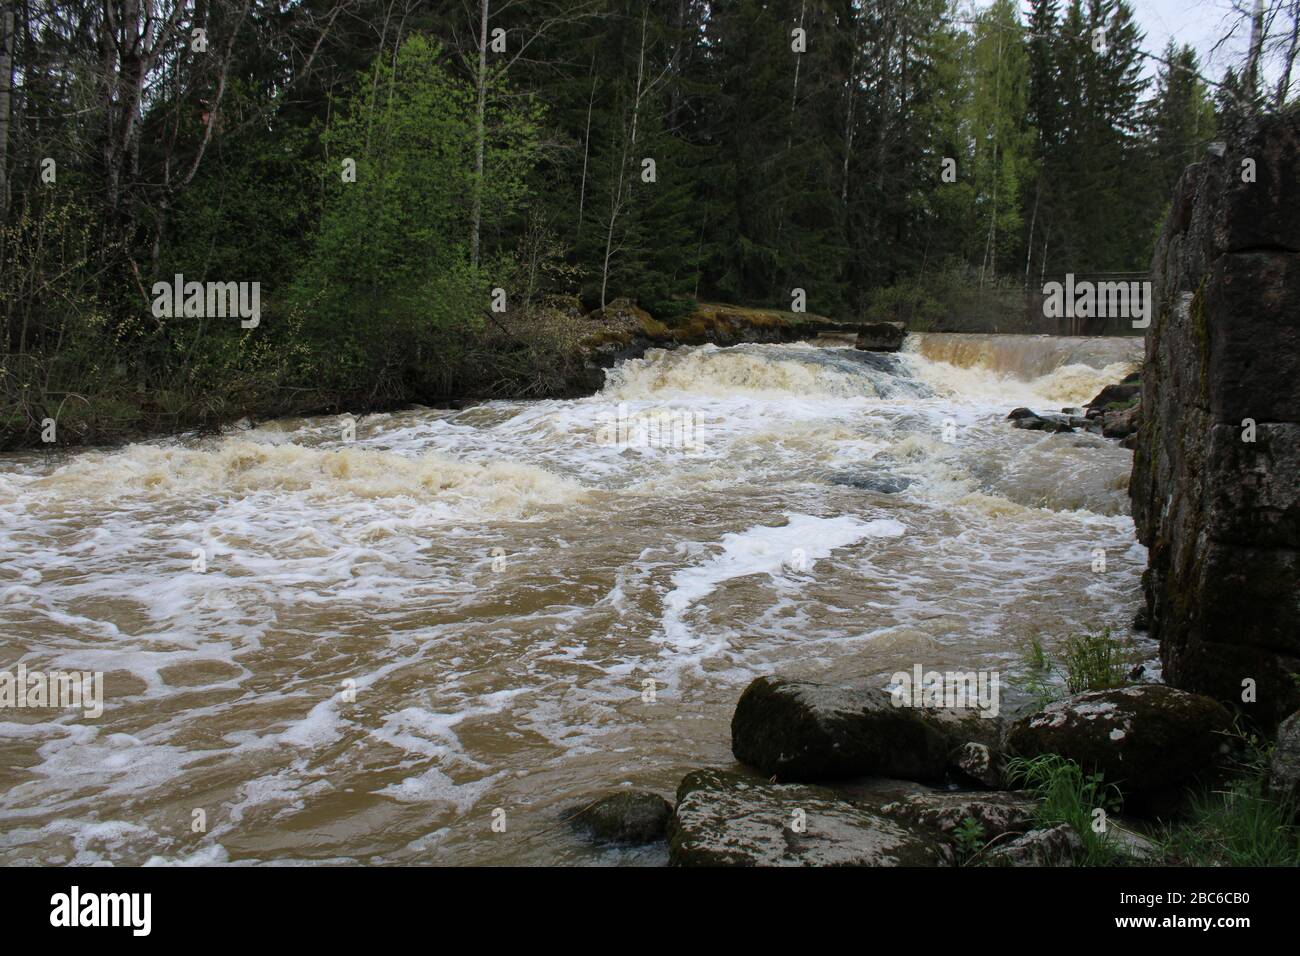 Myllykulmankoski rapids, Orimattila, Finland. Stock Photo